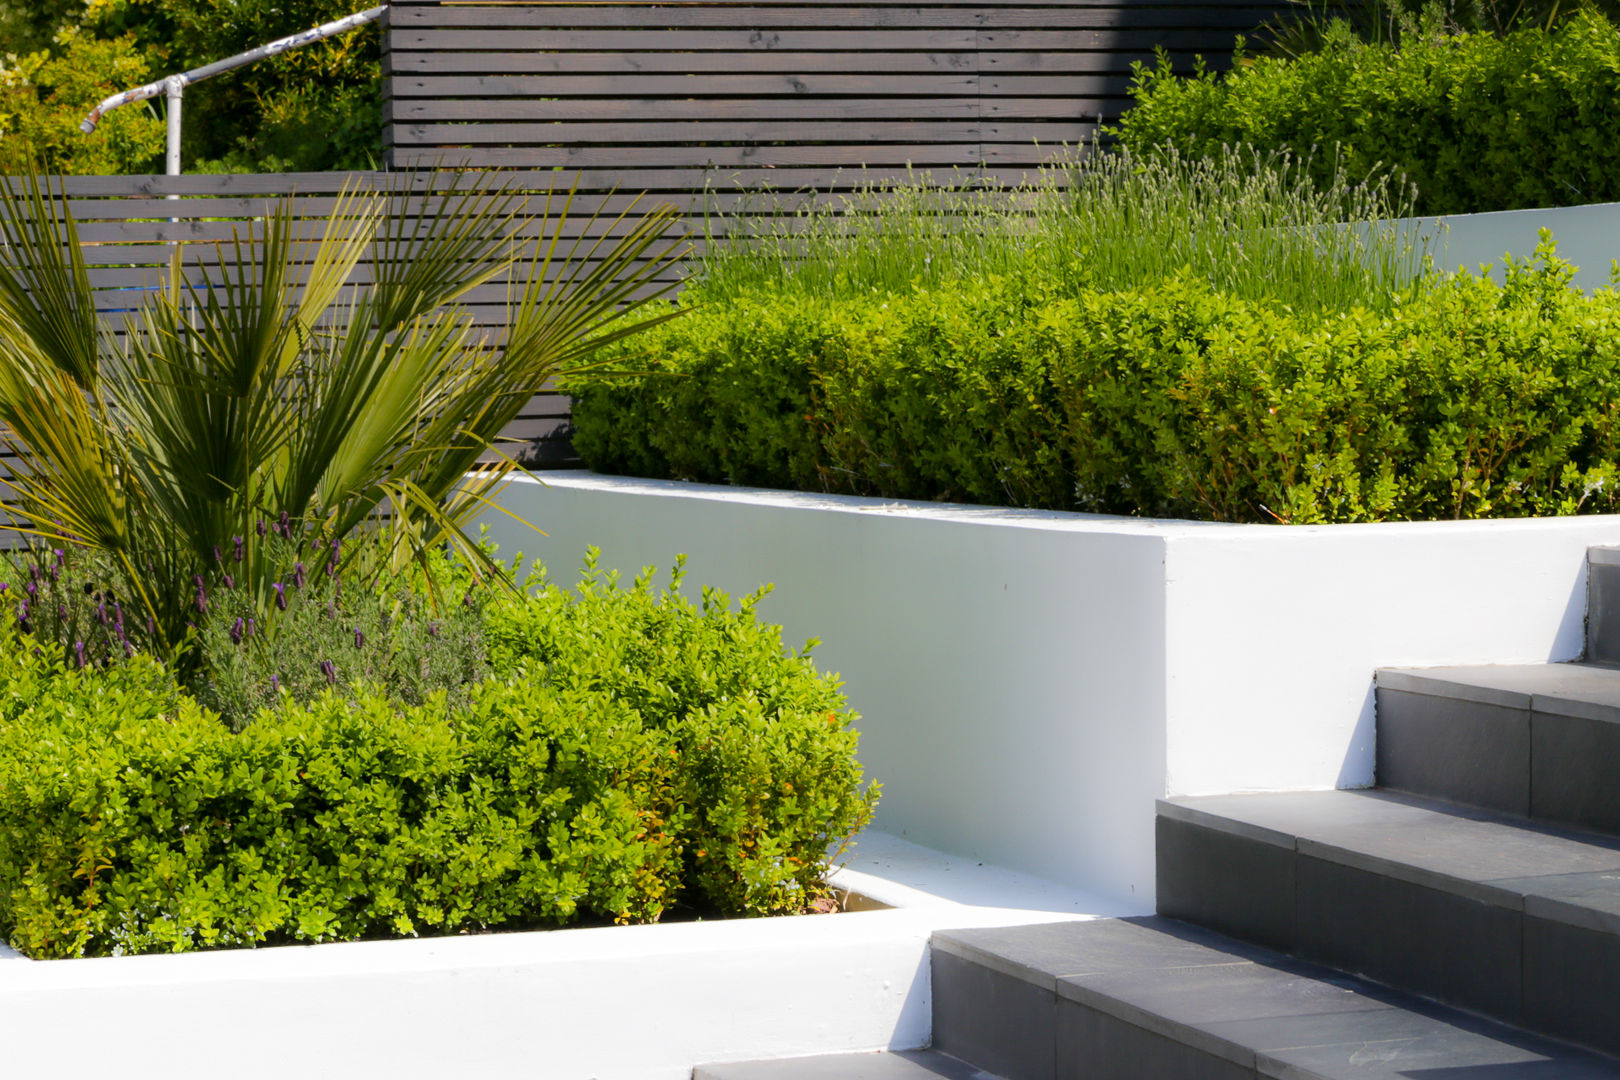 HOUSE FRONTAGE DESIGN, Concept Landscape Architects Concept Landscape Architects